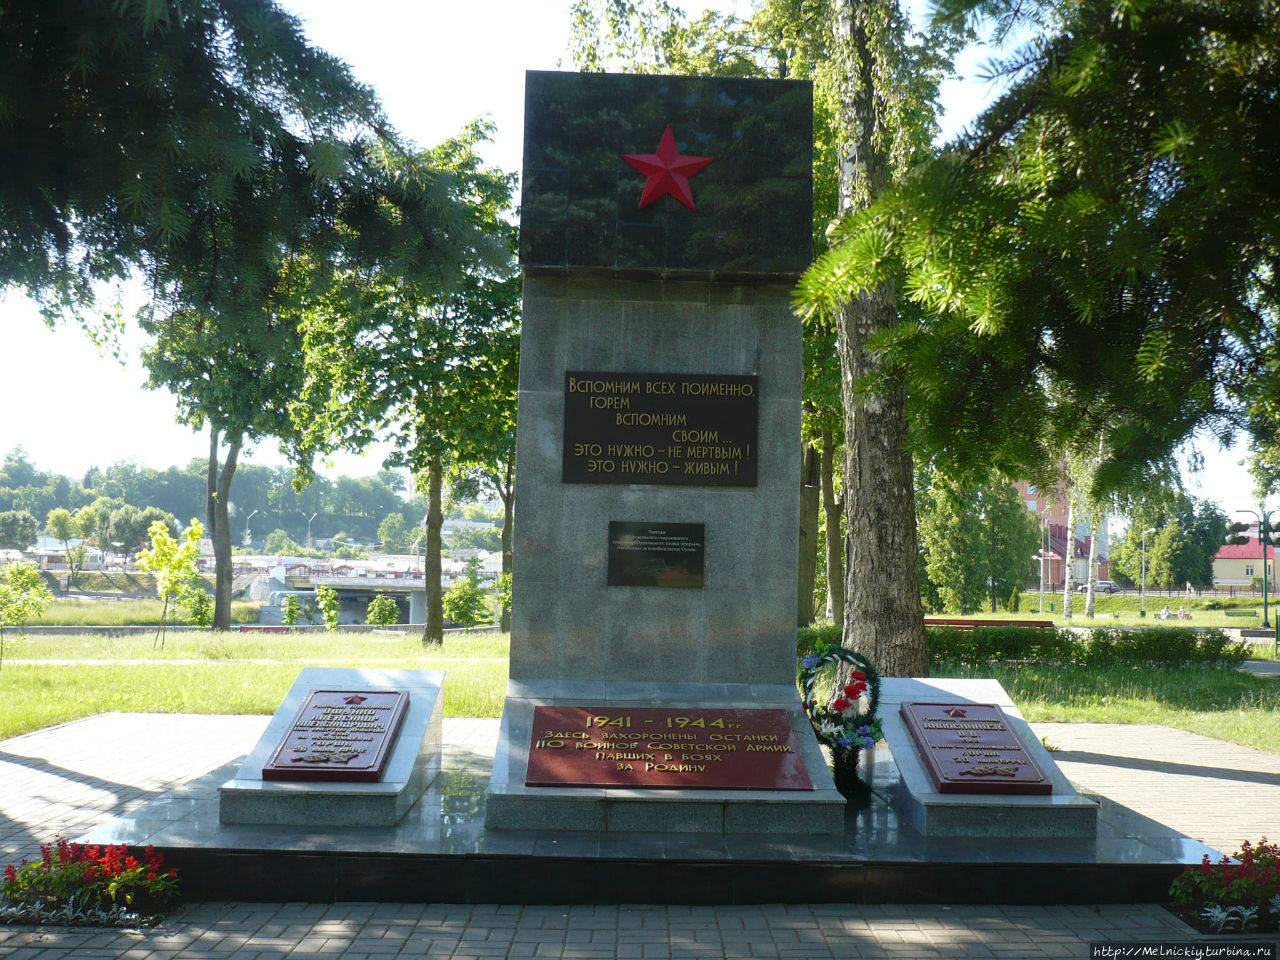 Мемориал павшим в боях за освобождение Орши / Memorial to fallen for liberation of Orsha